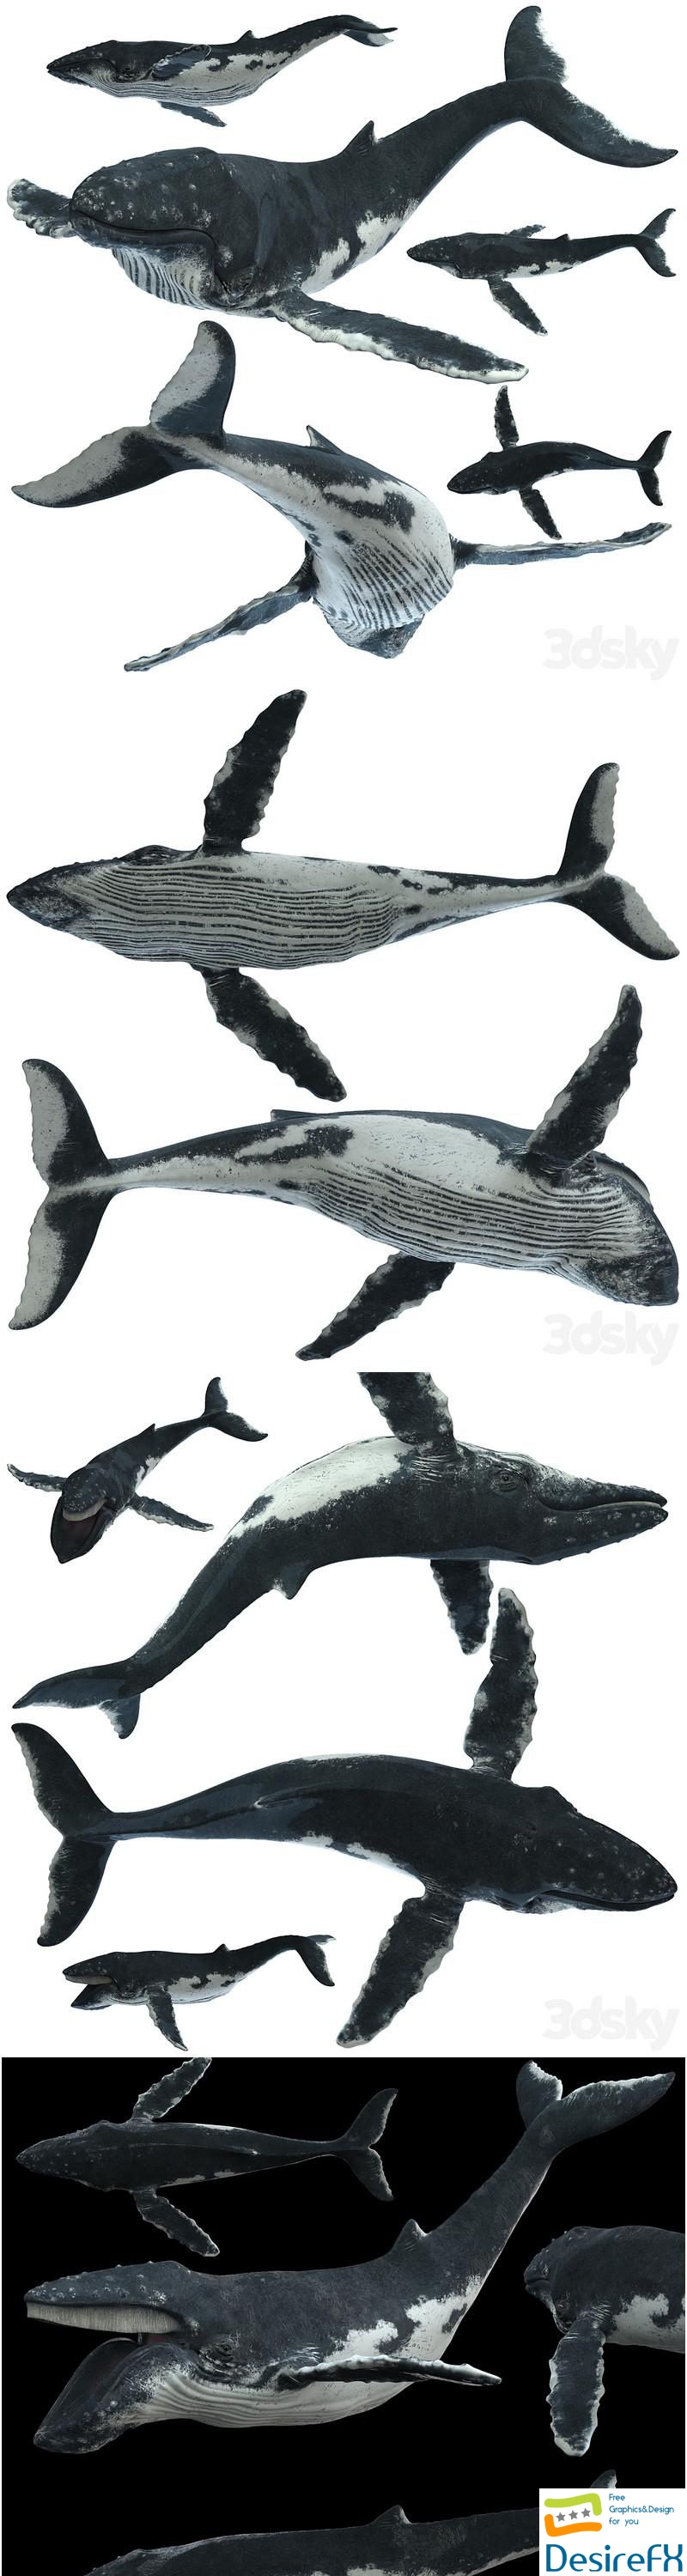 Humpback whale 3D Model